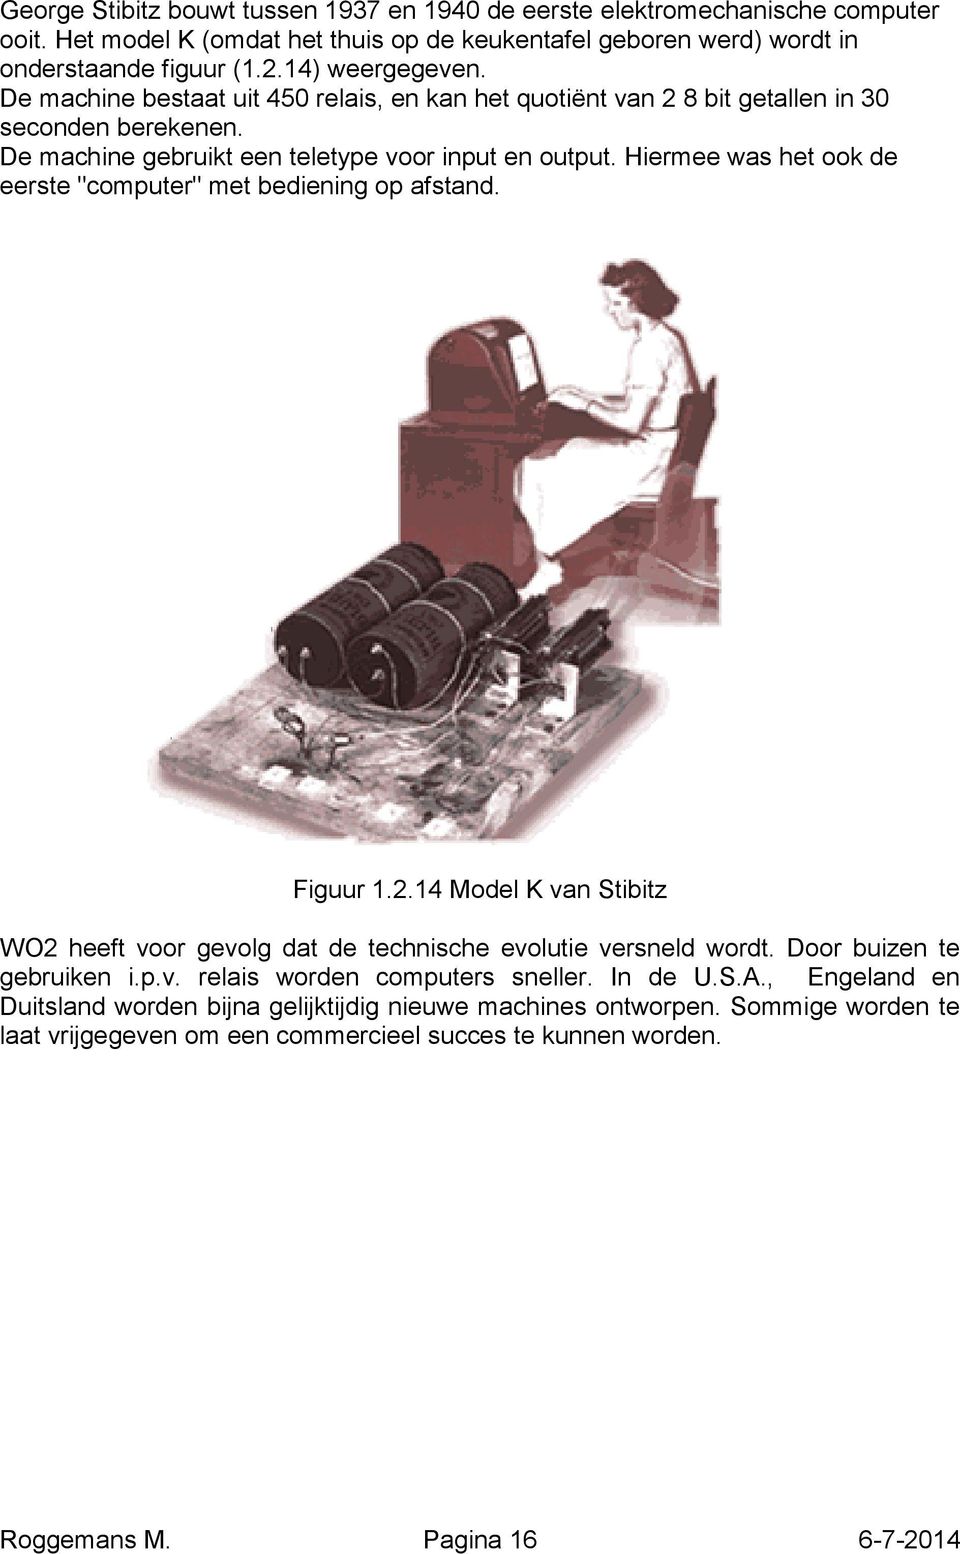 Hiermee was het ook de eerste "computer" met bediening op afstand. Figuur 1.2.14 Model K van Stibitz WO2 heeft voor gevolg dat de technische evolutie versneld wordt. Door buizen te gebruiken i.p.v. relais worden computers sneller.